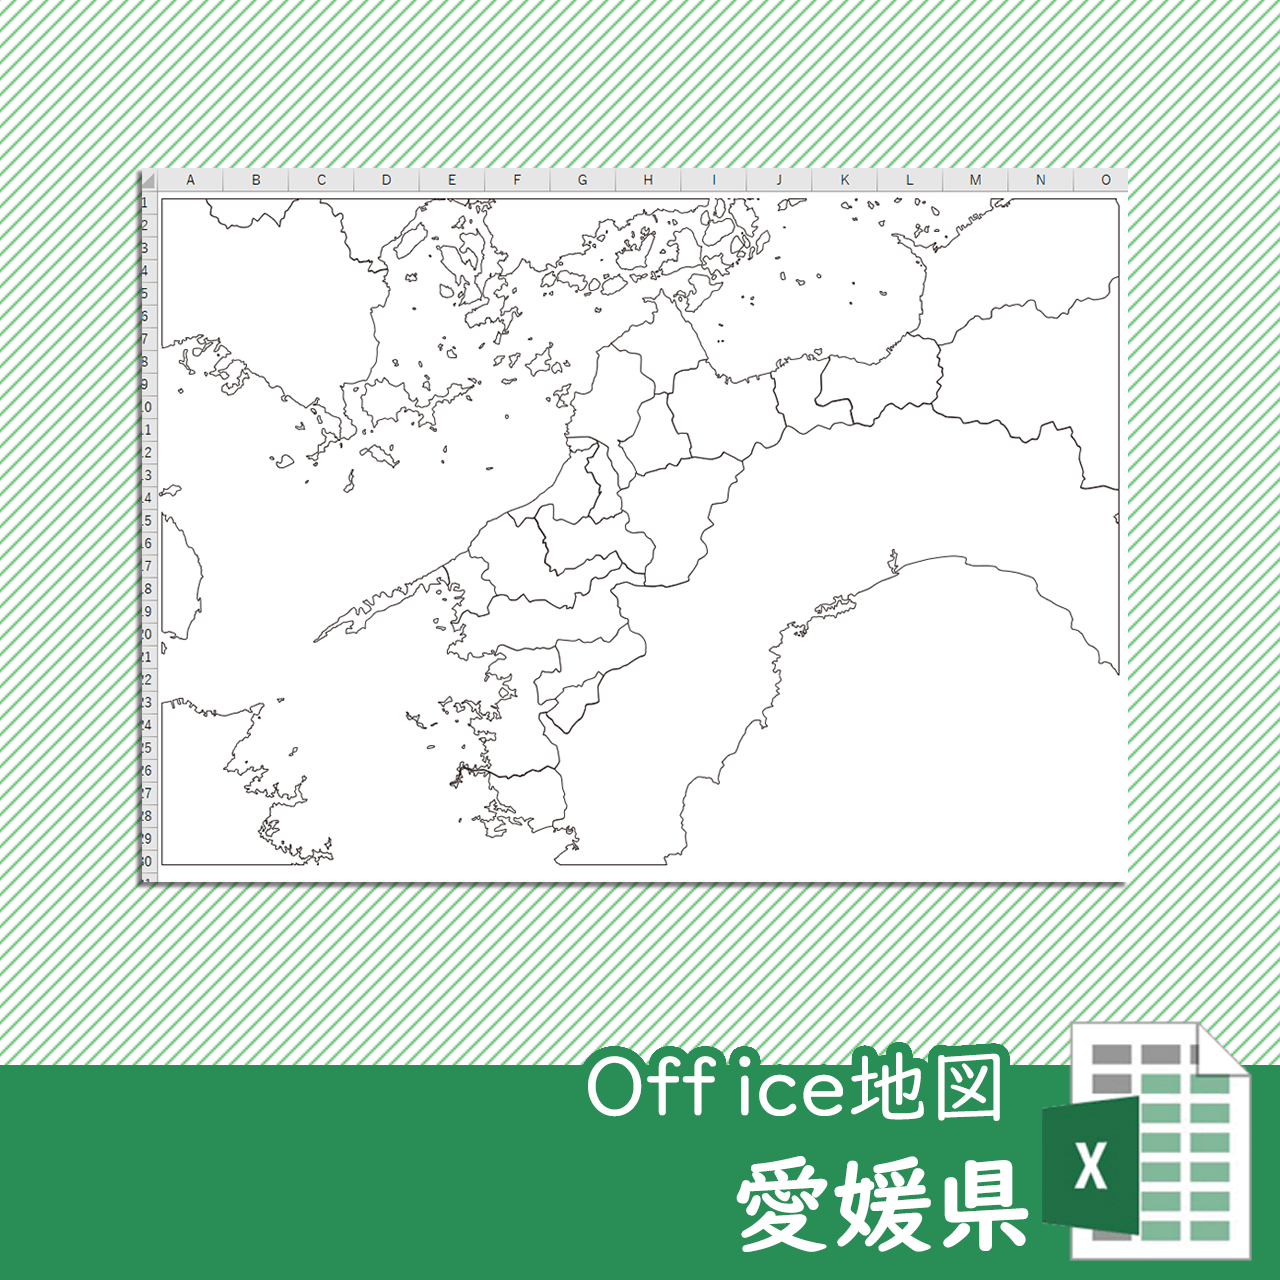 愛媛県のoffice地図